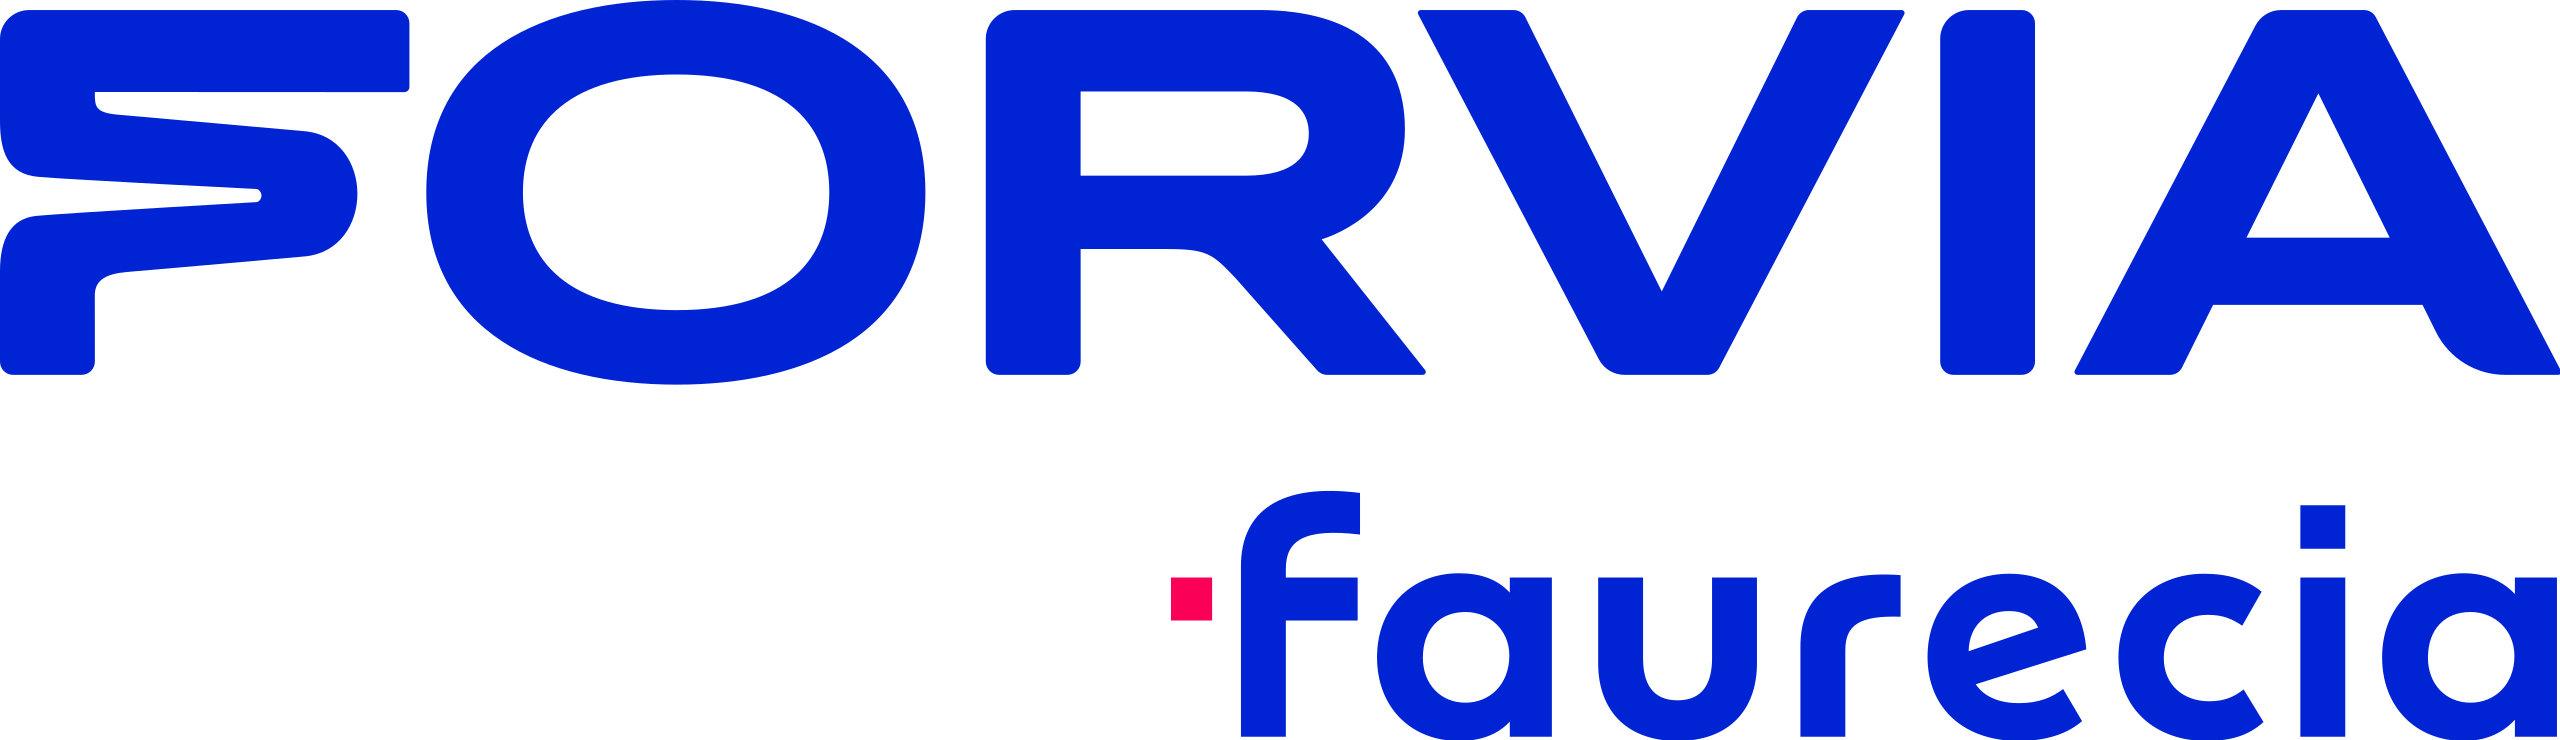 Logo_Faurecia_groupe_FORVIA.svg